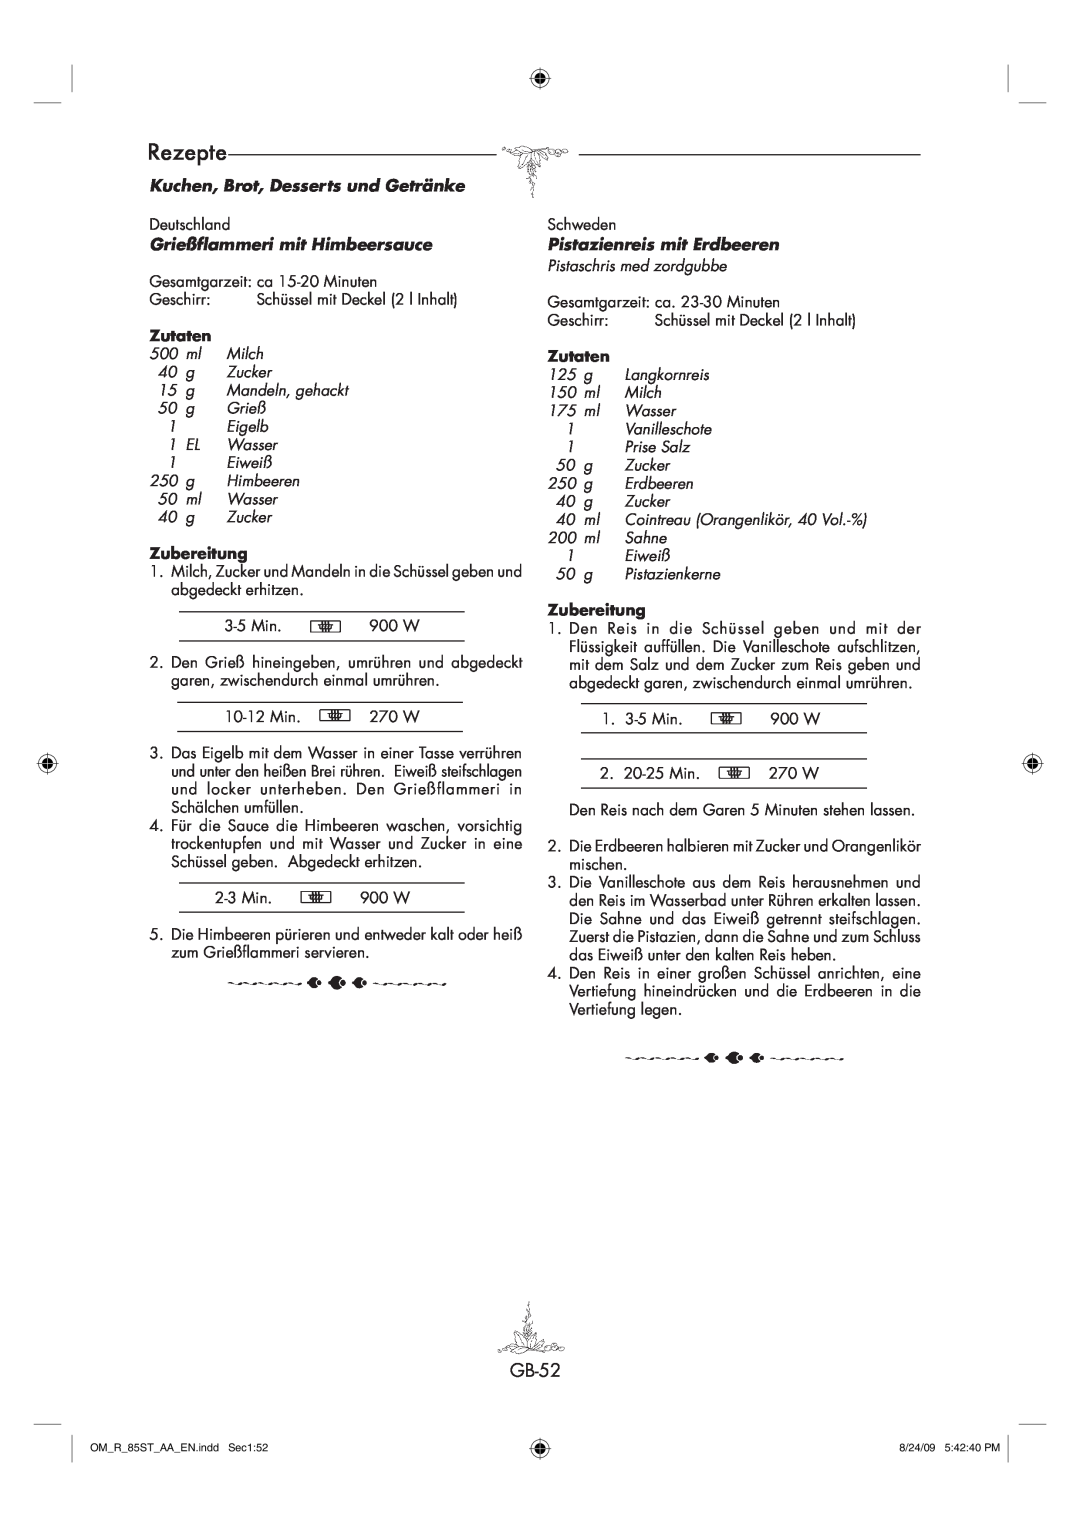 Sharp R-85ST-AA operation manual Rezepte, GB-52, Kuchen, Brot, Desserts und Getränke, Grießflammeri mit Himbeersauce 